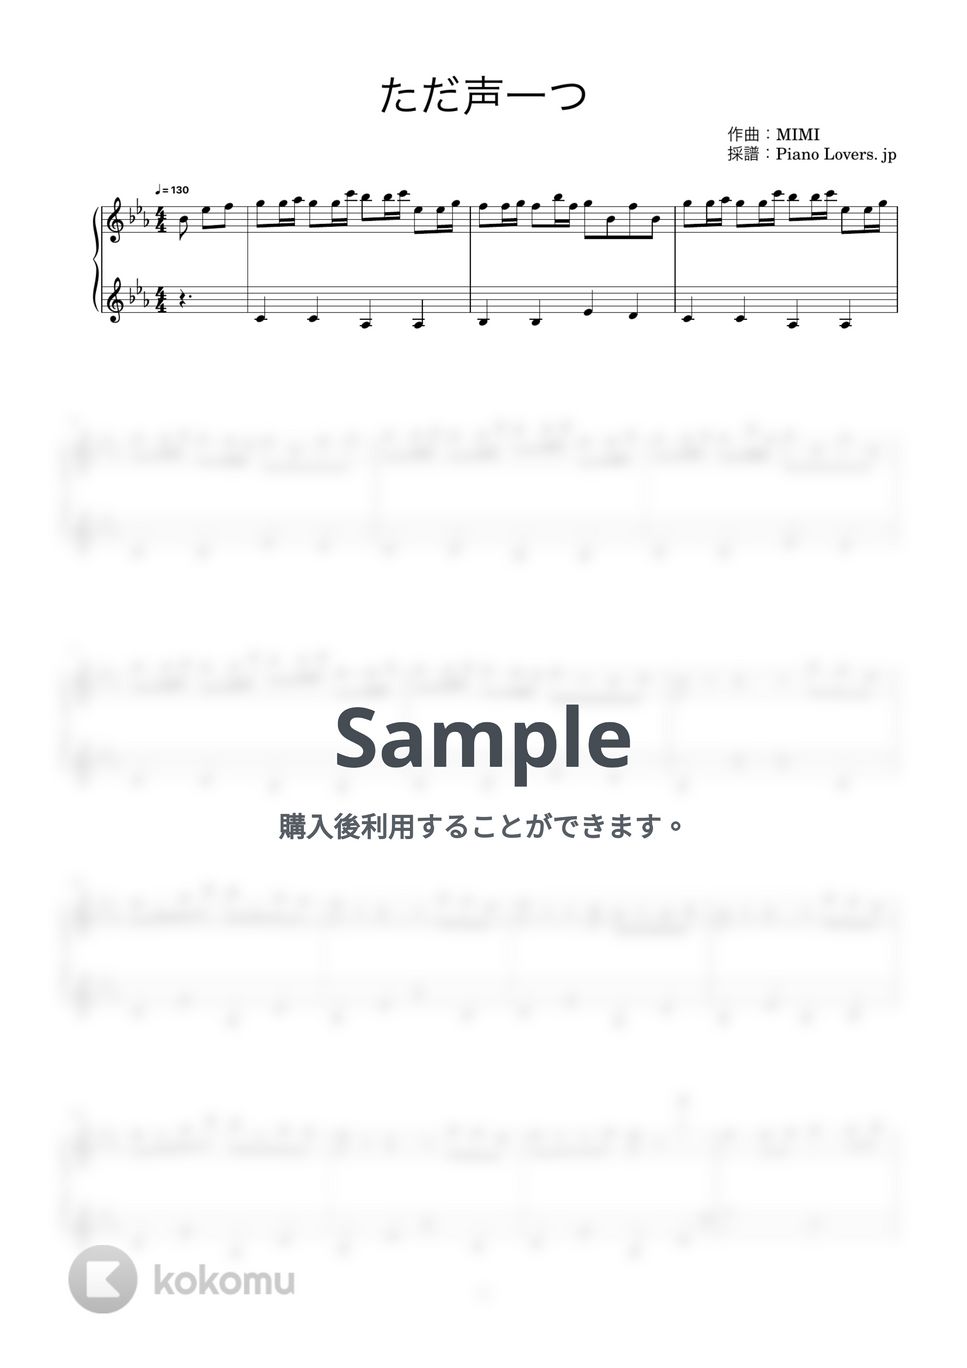 ロクデナシ - ただ声一つ (ピアノ楽譜 / 簡単) by Piano Lovers. jp